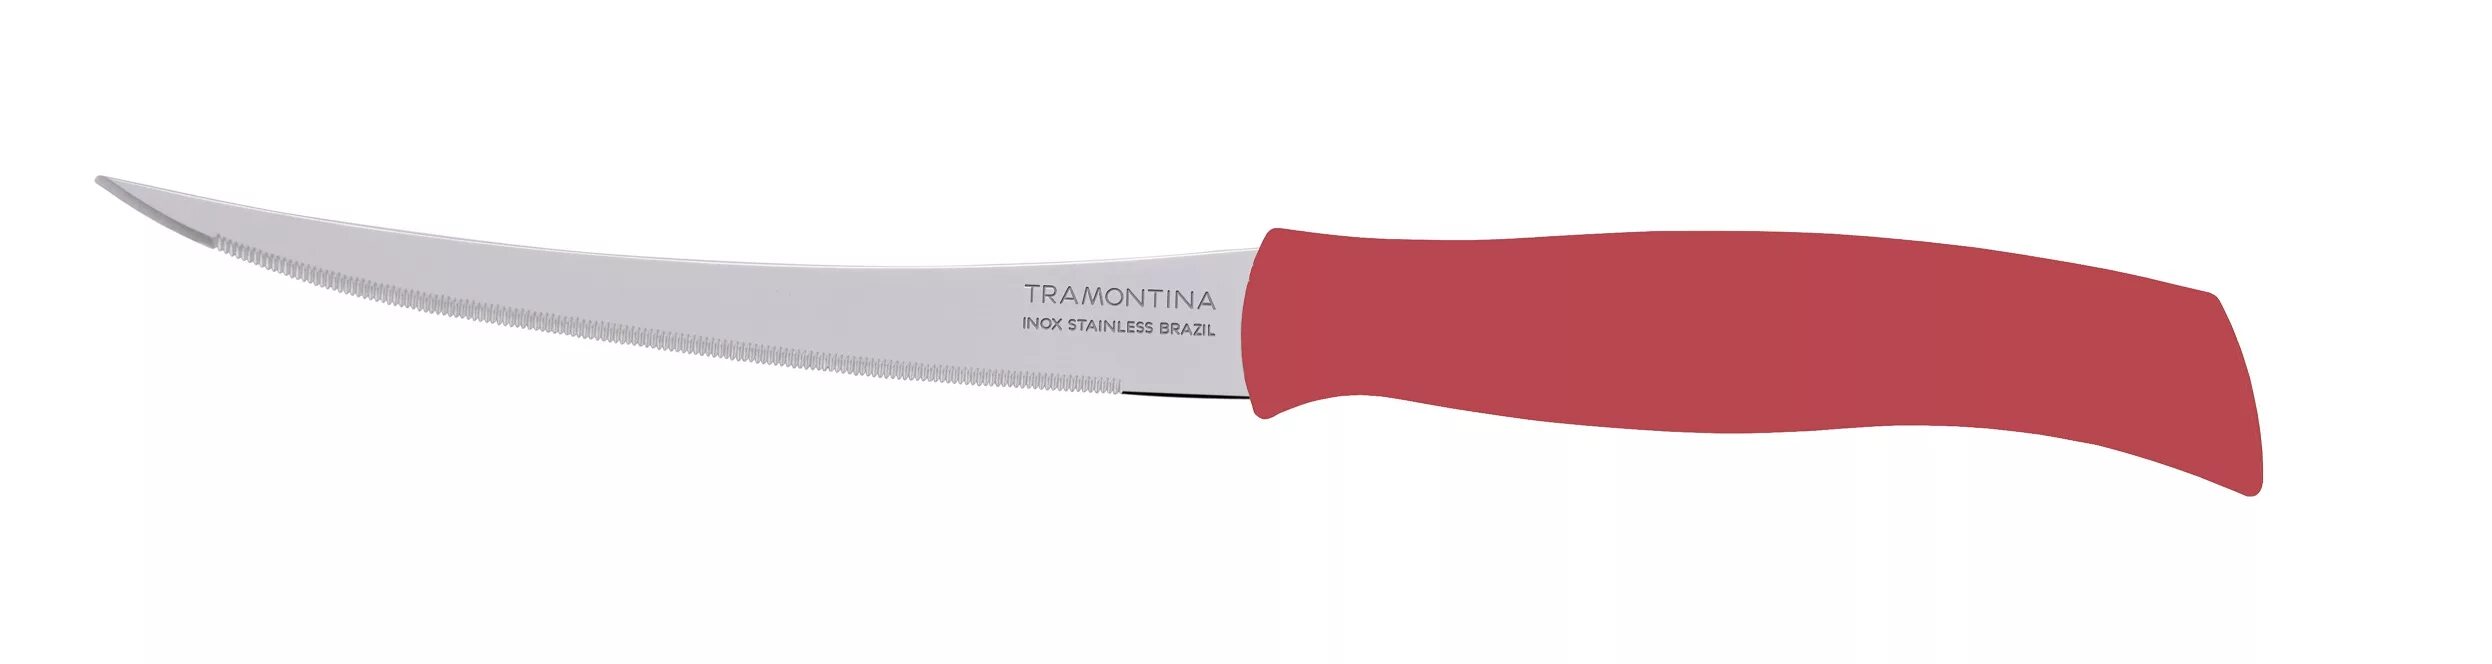 Нож для томатов 5" "Tramontina" Athus. Трамонтина красный нож для томатов 100сп. Нож д/томатов 12,5см бел. Athus 23088/085. 23428/065 Нож для помидоров/цитрусовых Plenus 12,5см.